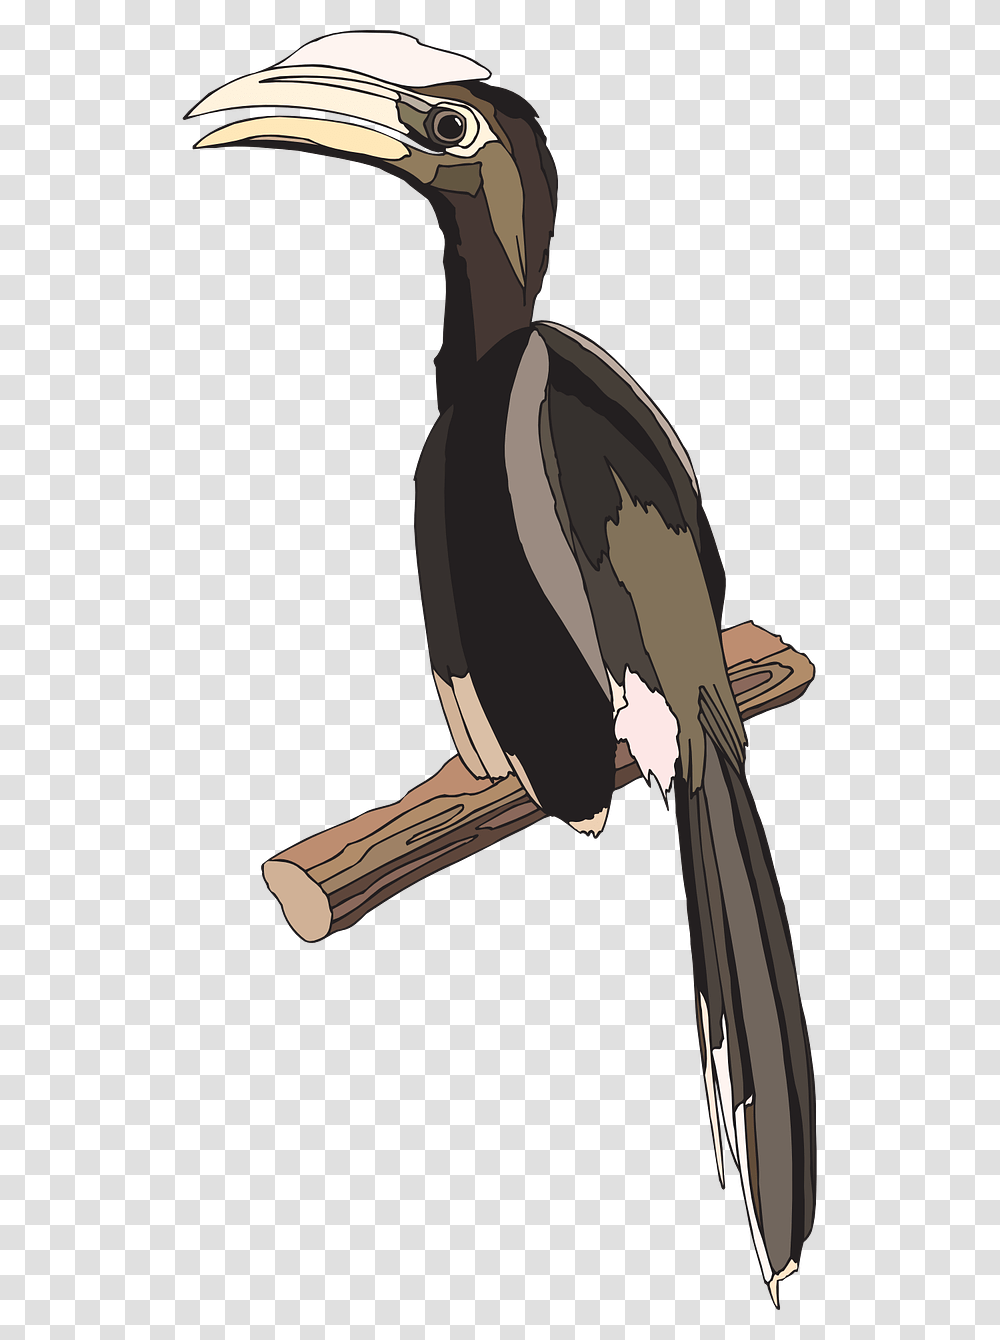 Hornbill, Bird, Animal, Penguin, Hammer Transparent Png